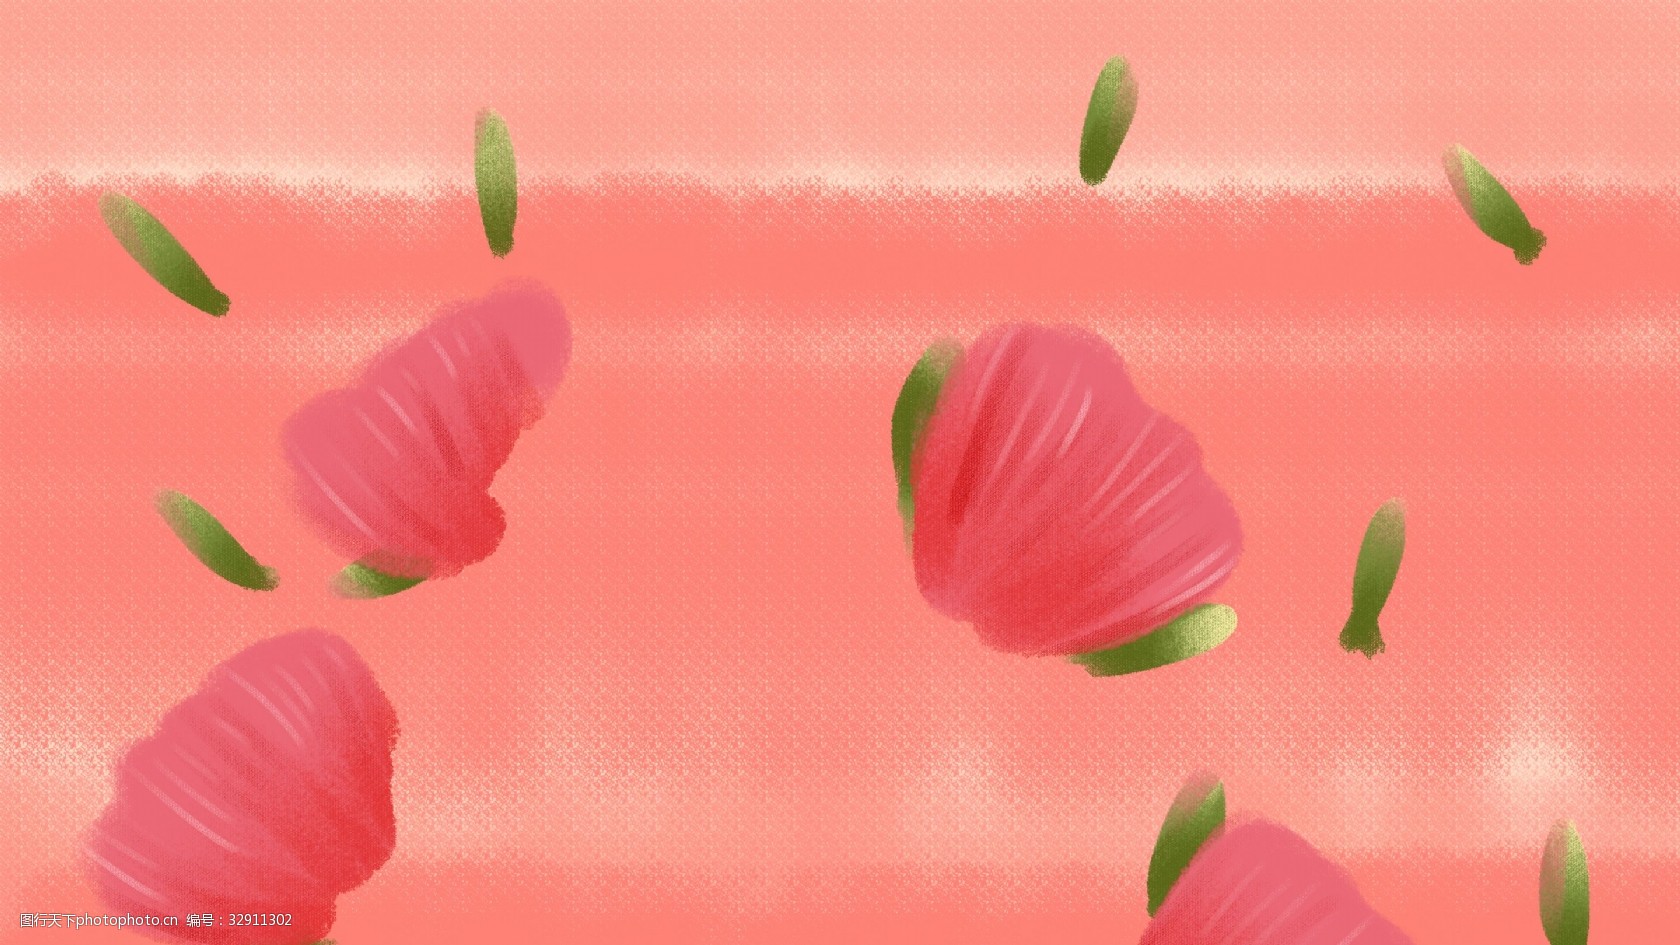 简约手绘花朵背景图 简约 文艺小清新 手绘花朵 粉色背景 暖色系 温馨